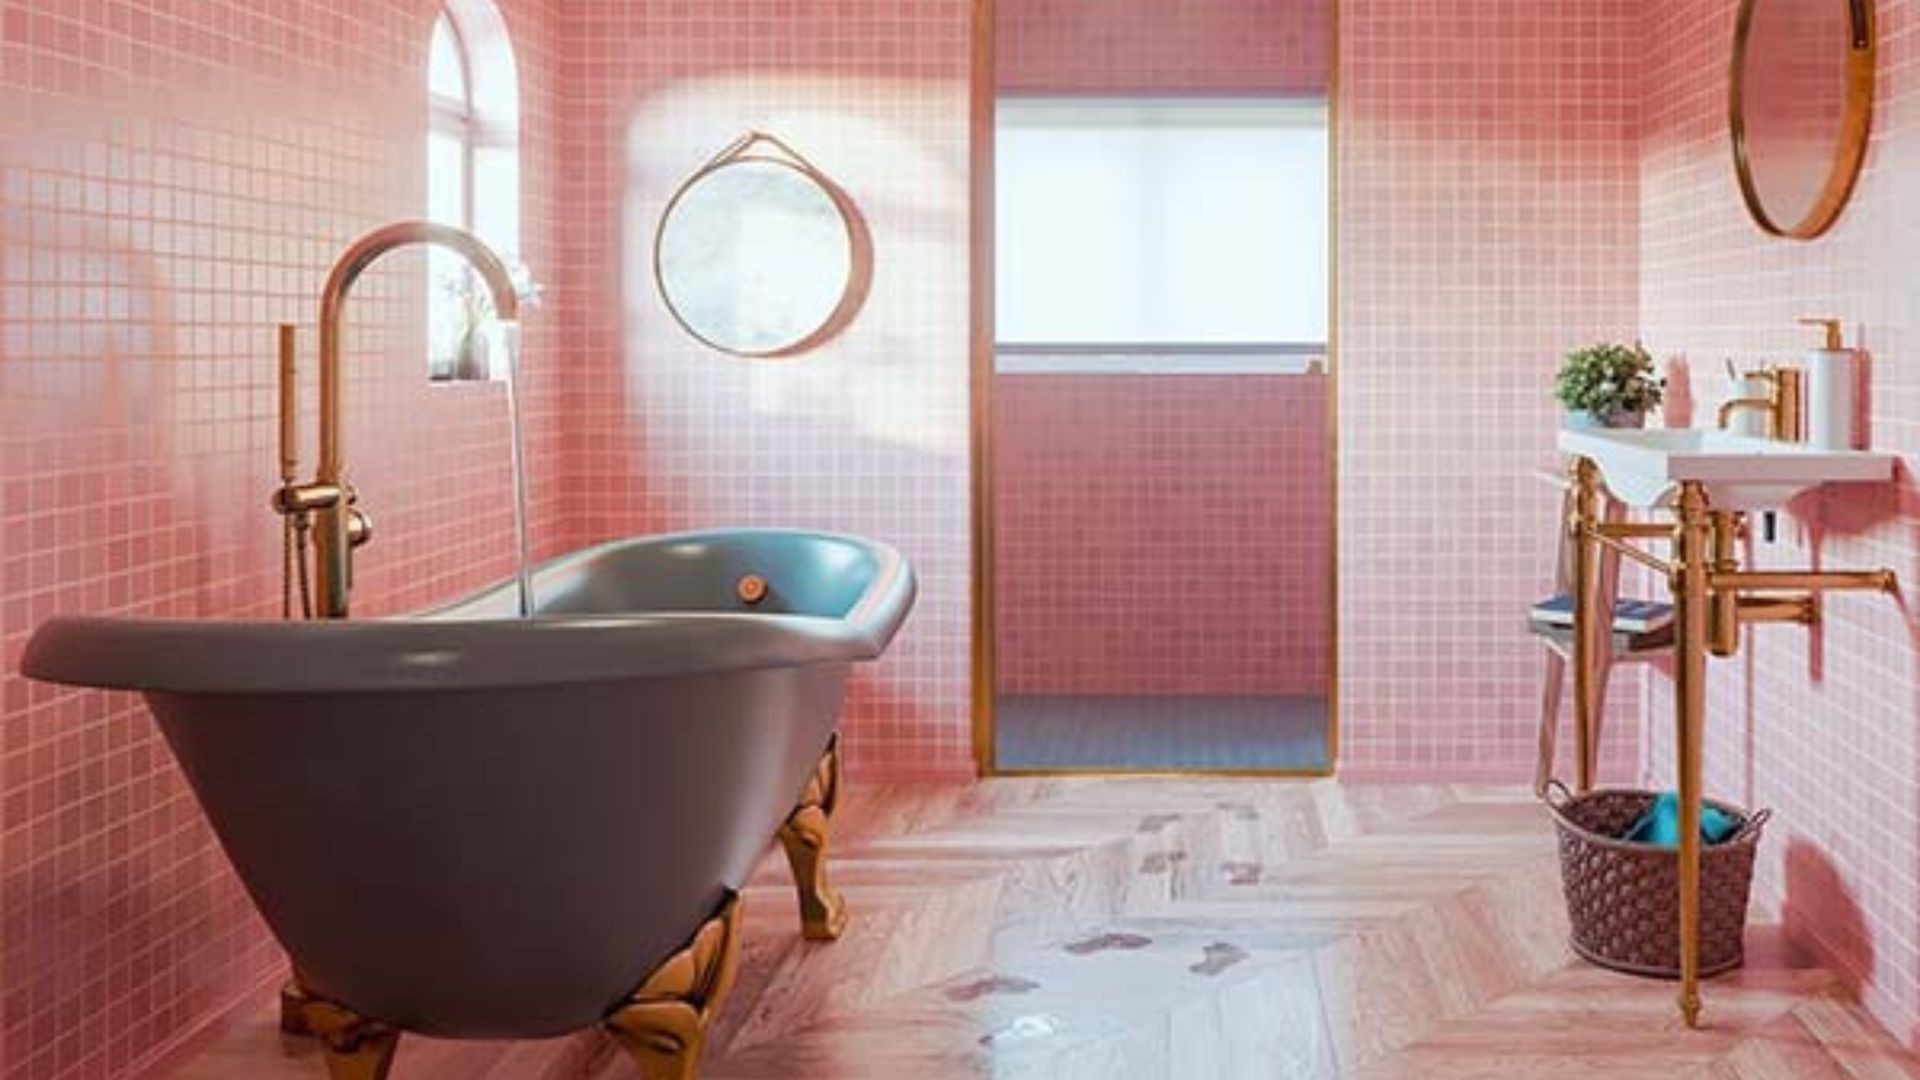 Thiết kế phòng tắm cùng màu hồng | Nguồn: Internet.